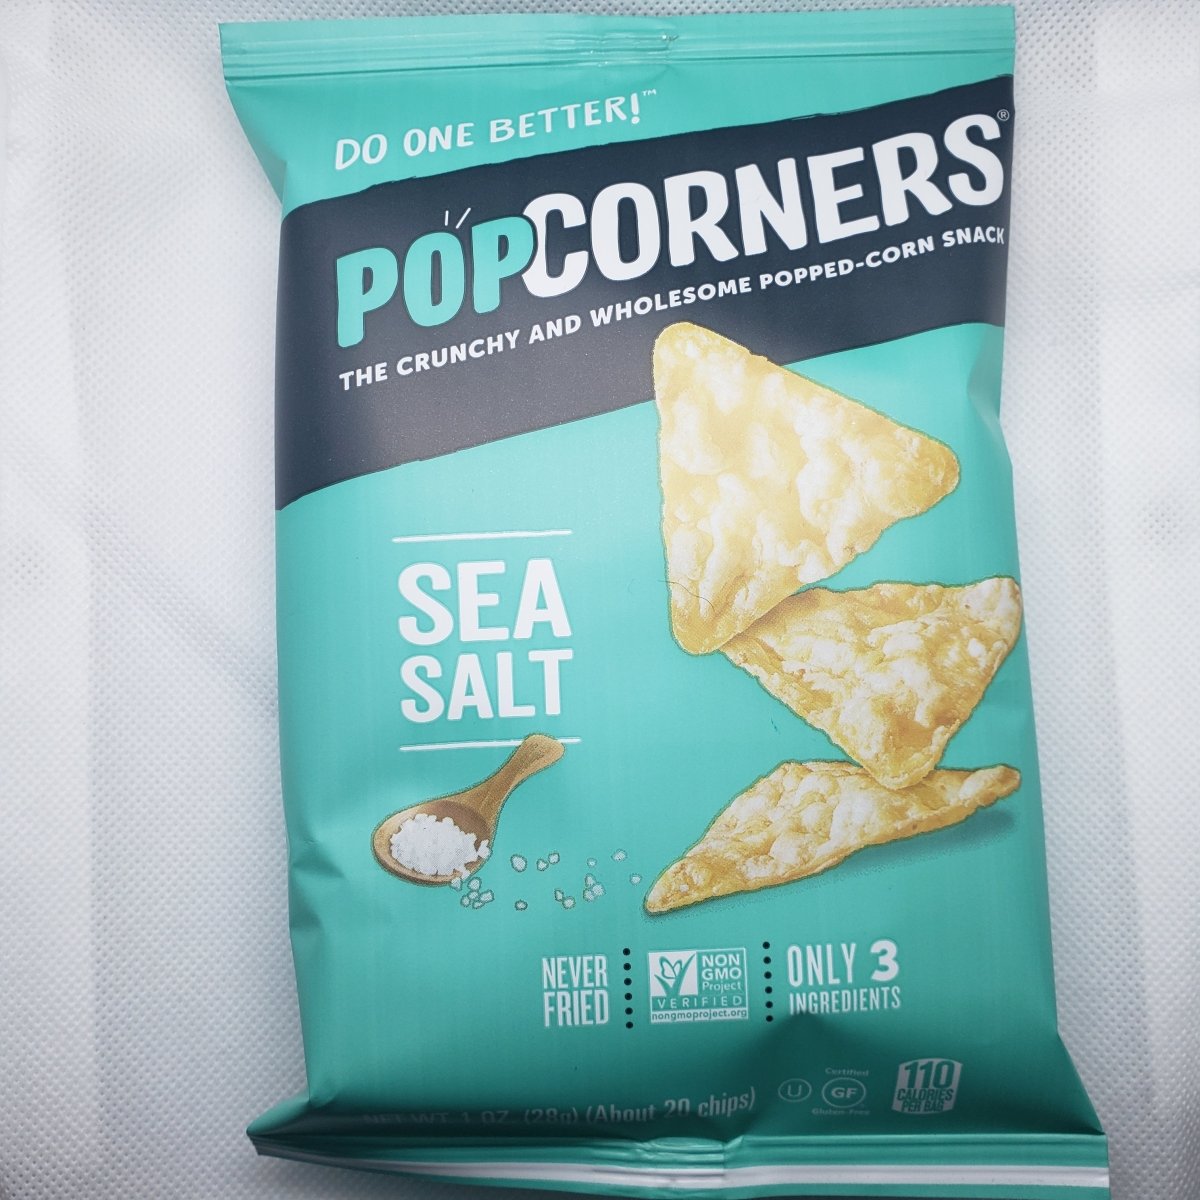 Pop Corners - Sea Salt - Popped-Corn Snack - 1oz